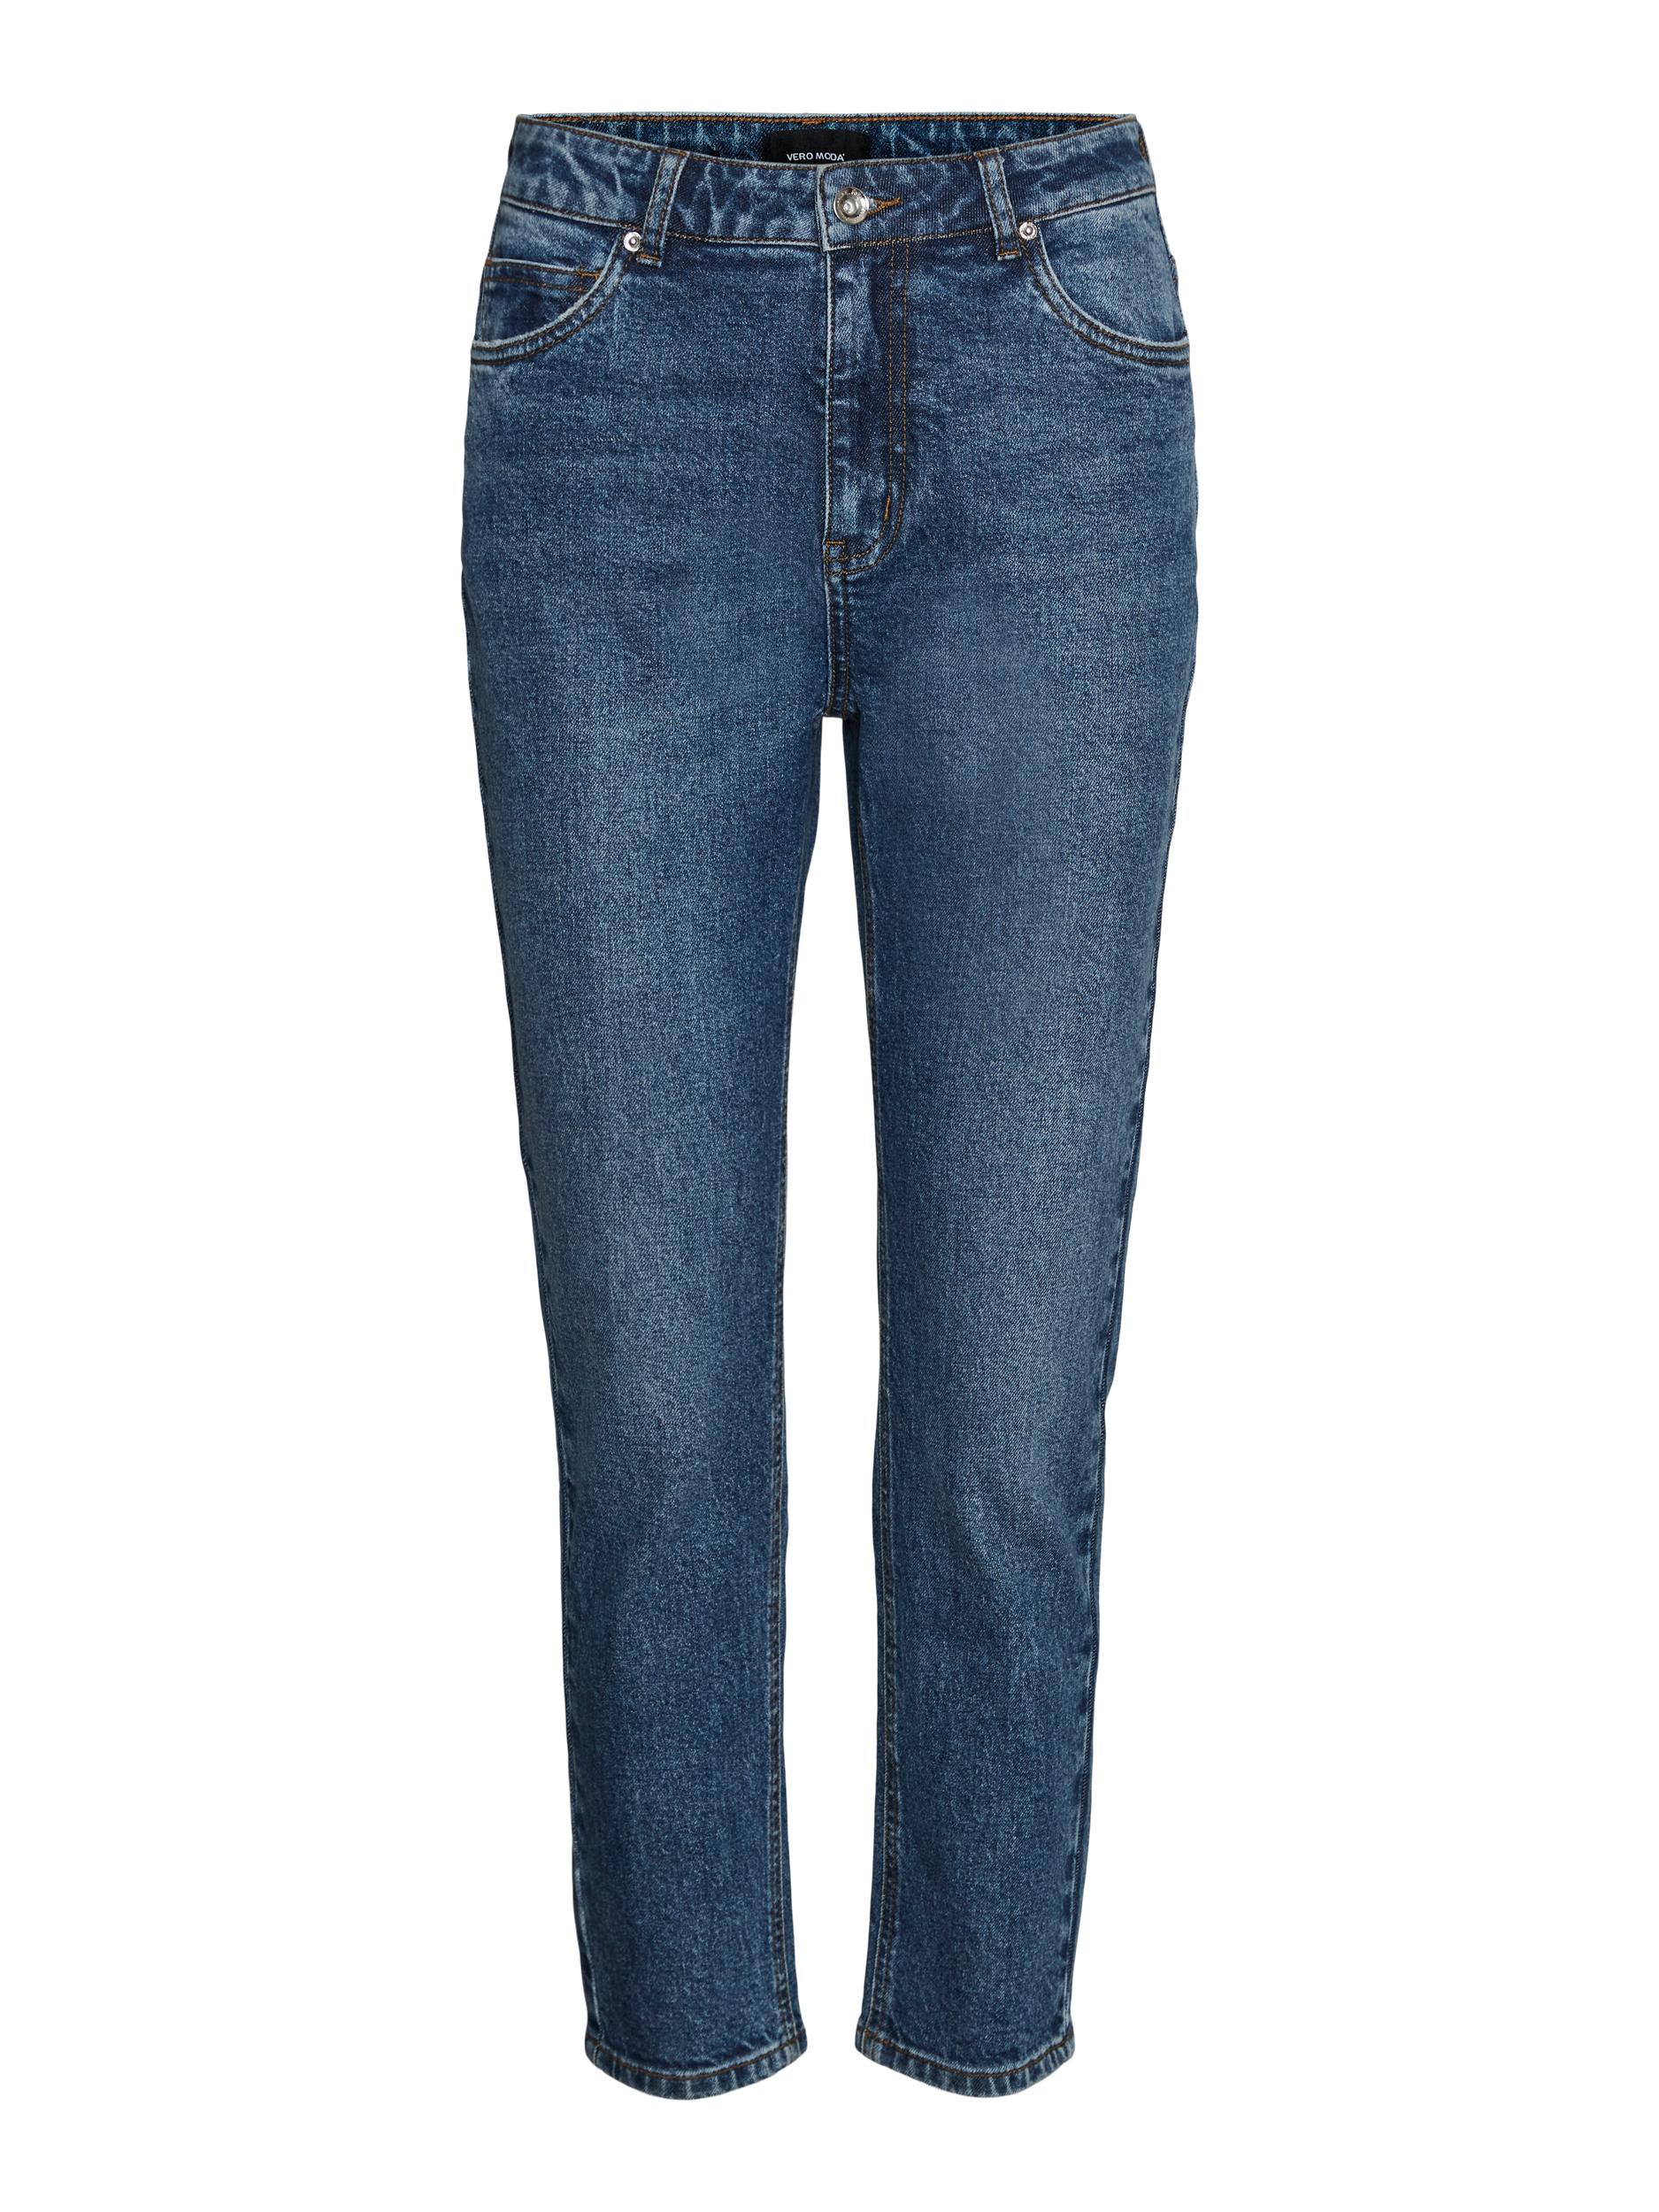 Vero Moda Brenda Jeans, Dark Blue Denim, W27/L30